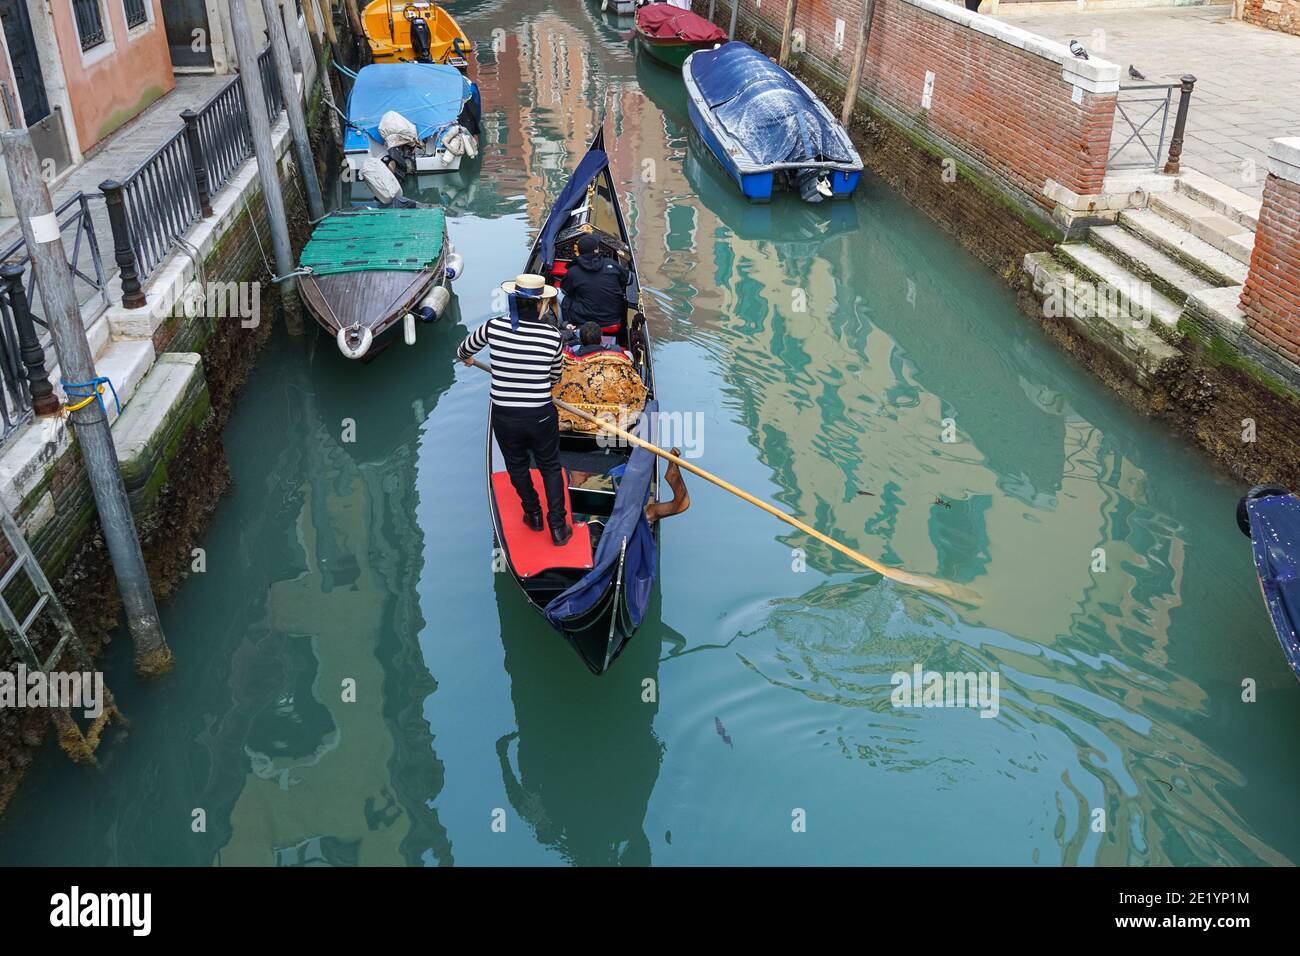 Gondolier sur une gondole vénitienne traditionnelle avec des touristes sur le canal à Venise, Italie Banque D'Images